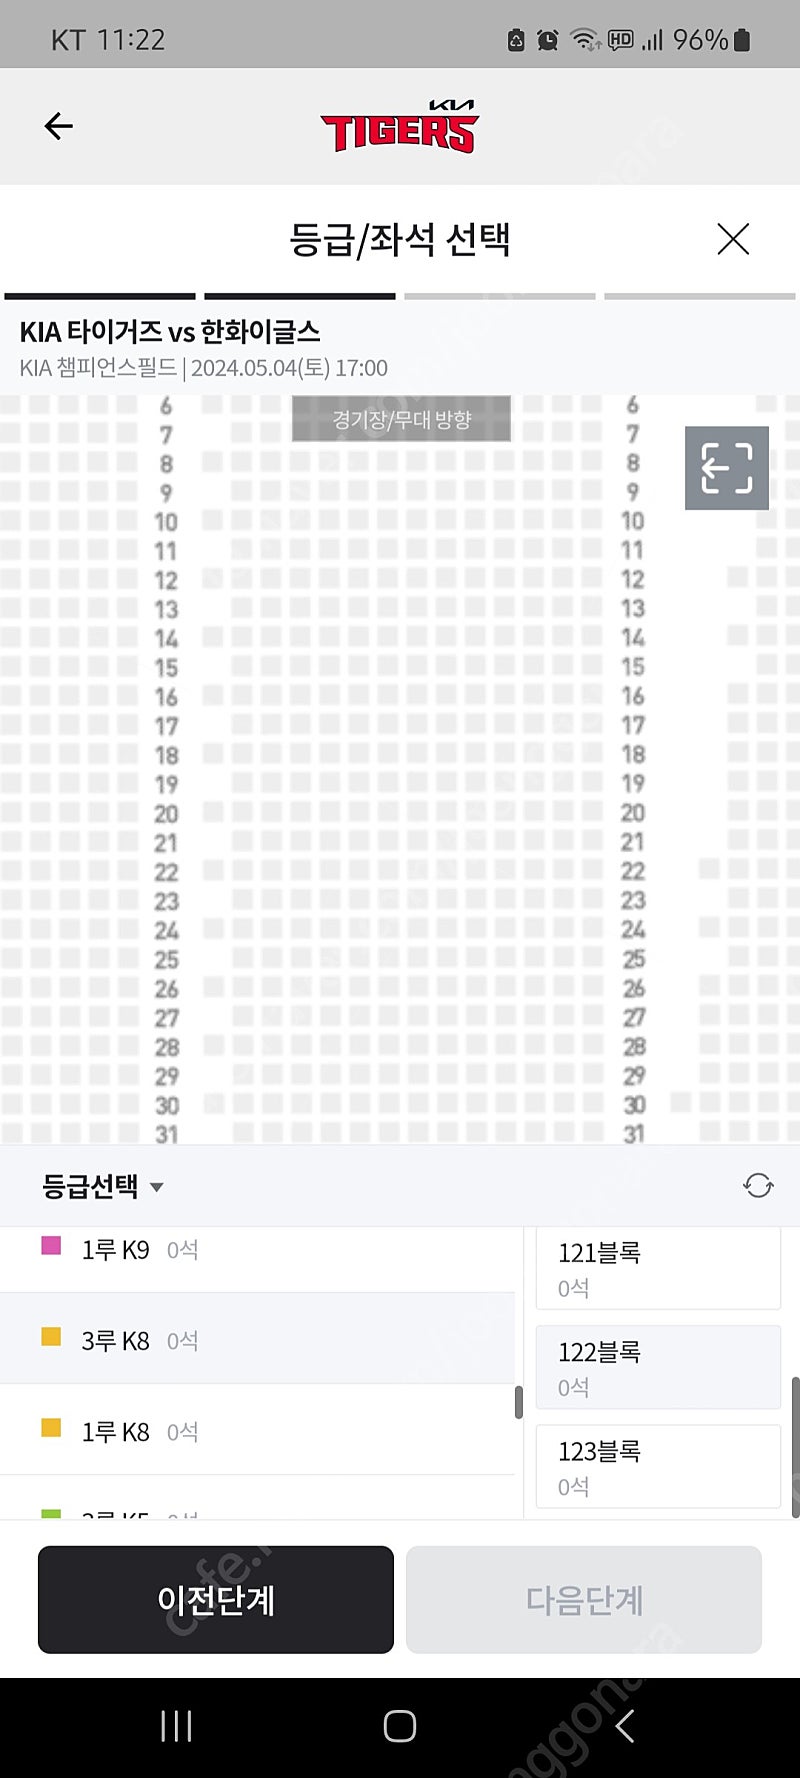 기아타이거즈 티켓 7/14 일요일 쓱전 3루 응원석 k8 k5 2연석 4연석 팝니다